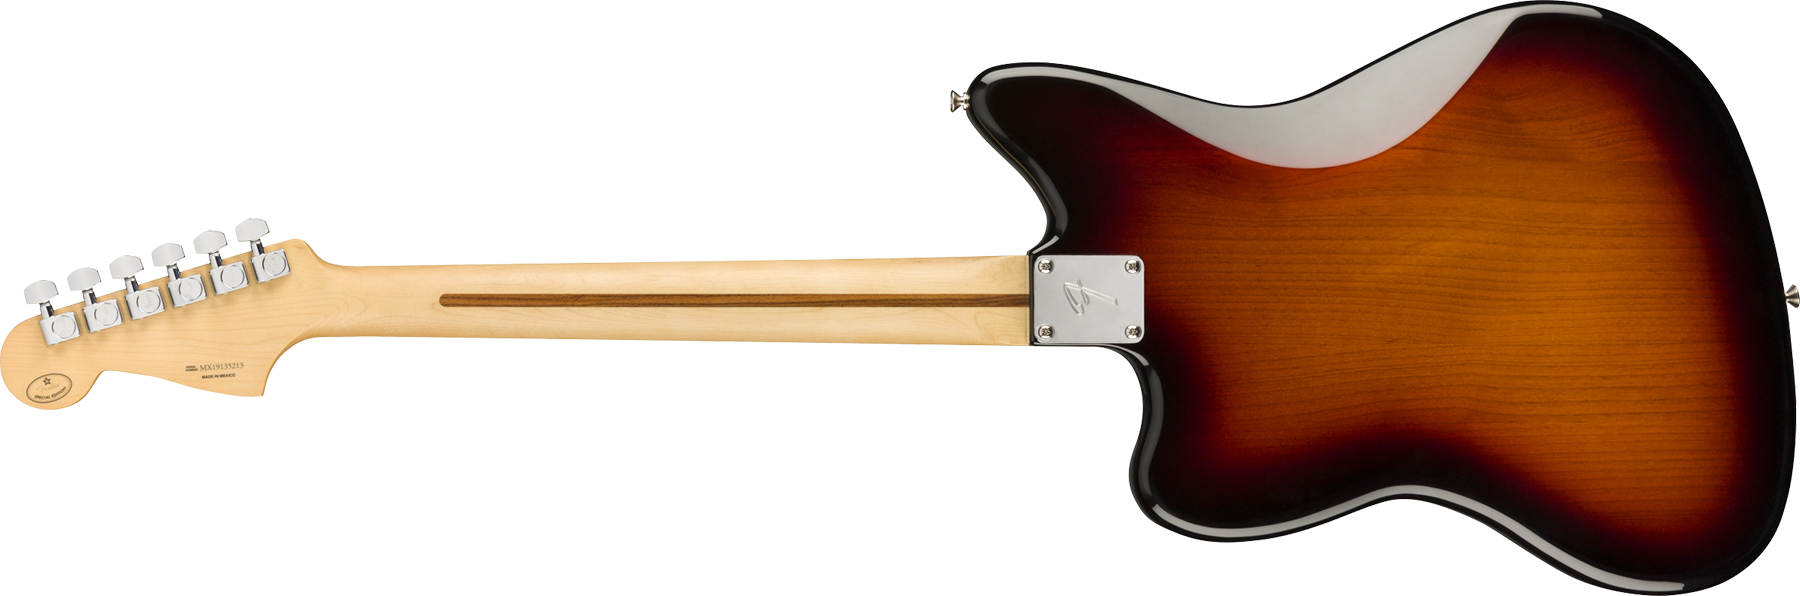 Fender Jazzmaster Player Ltd 2s Trem Pf - 3-color Sunburst - Guitarra electrica retro rock - Variation 1